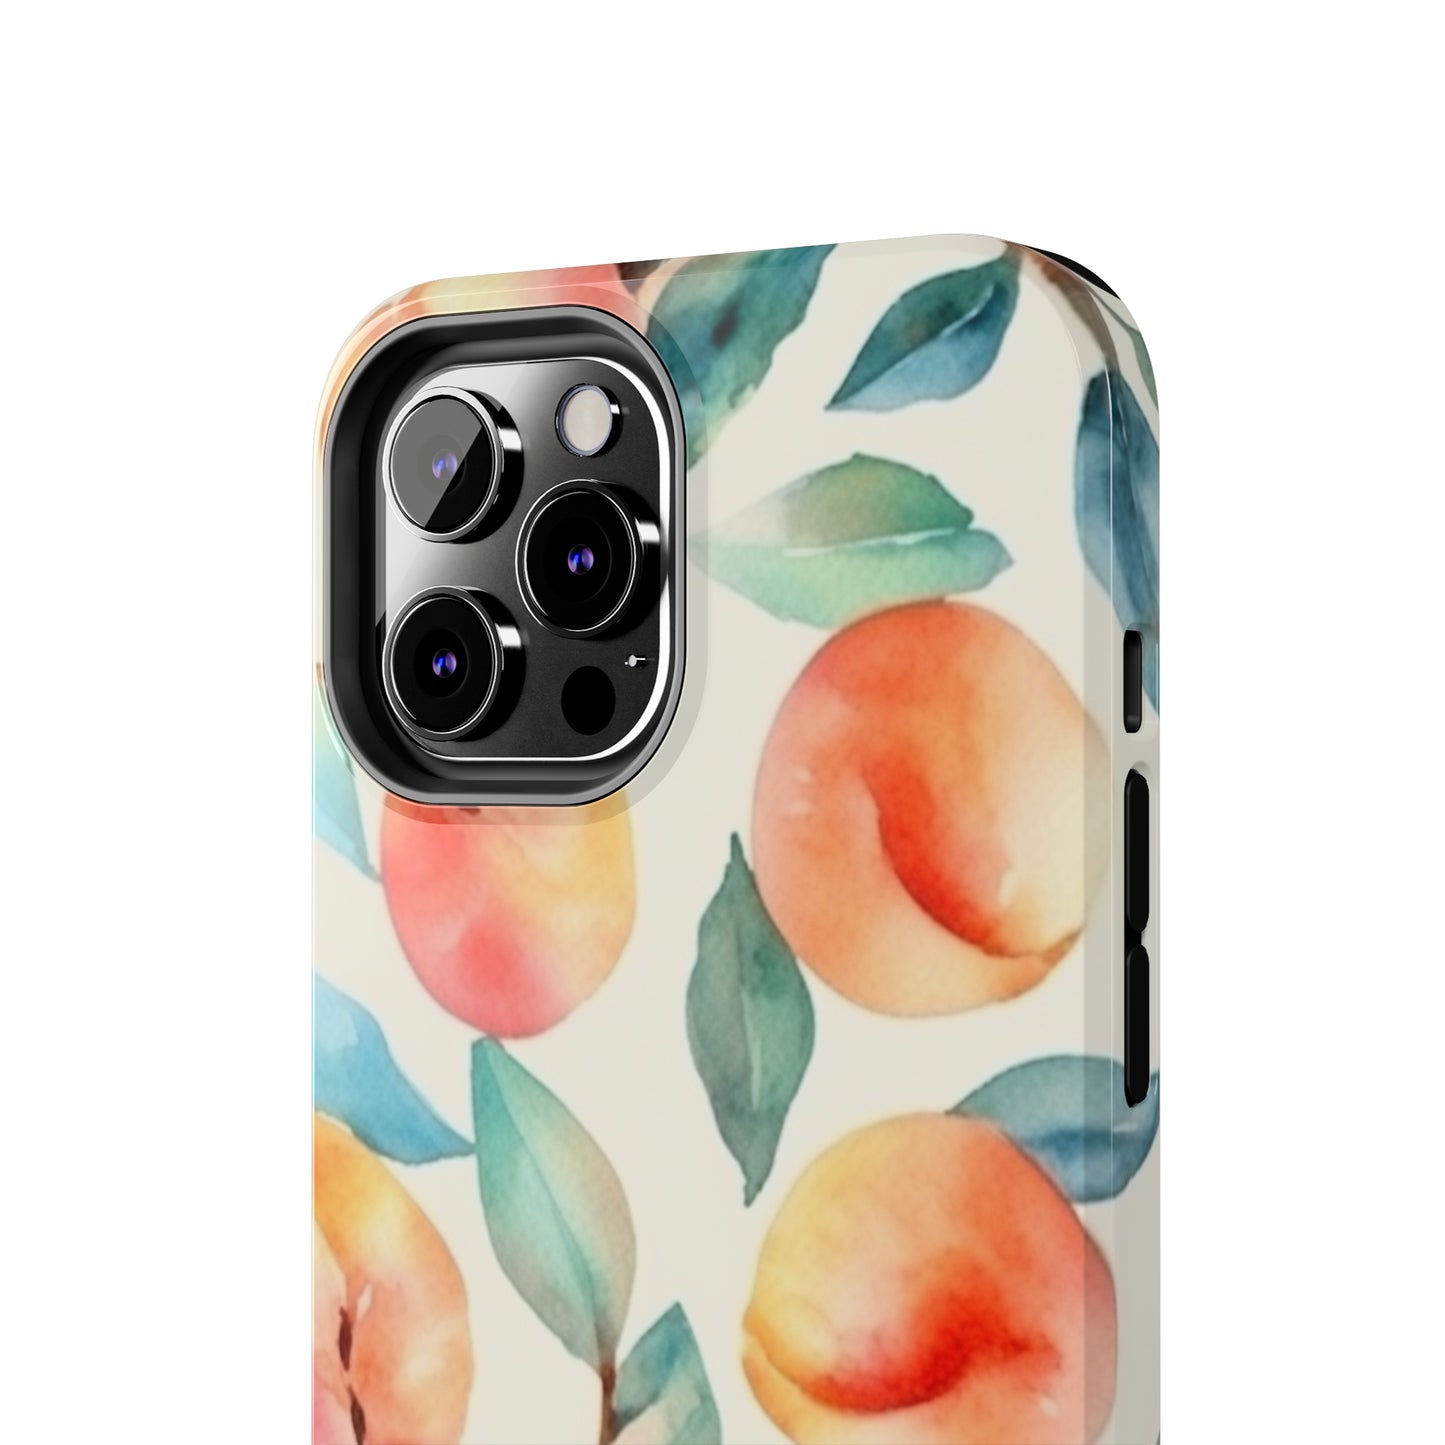 Autumn Peaches iPhone Tough Phone Cases